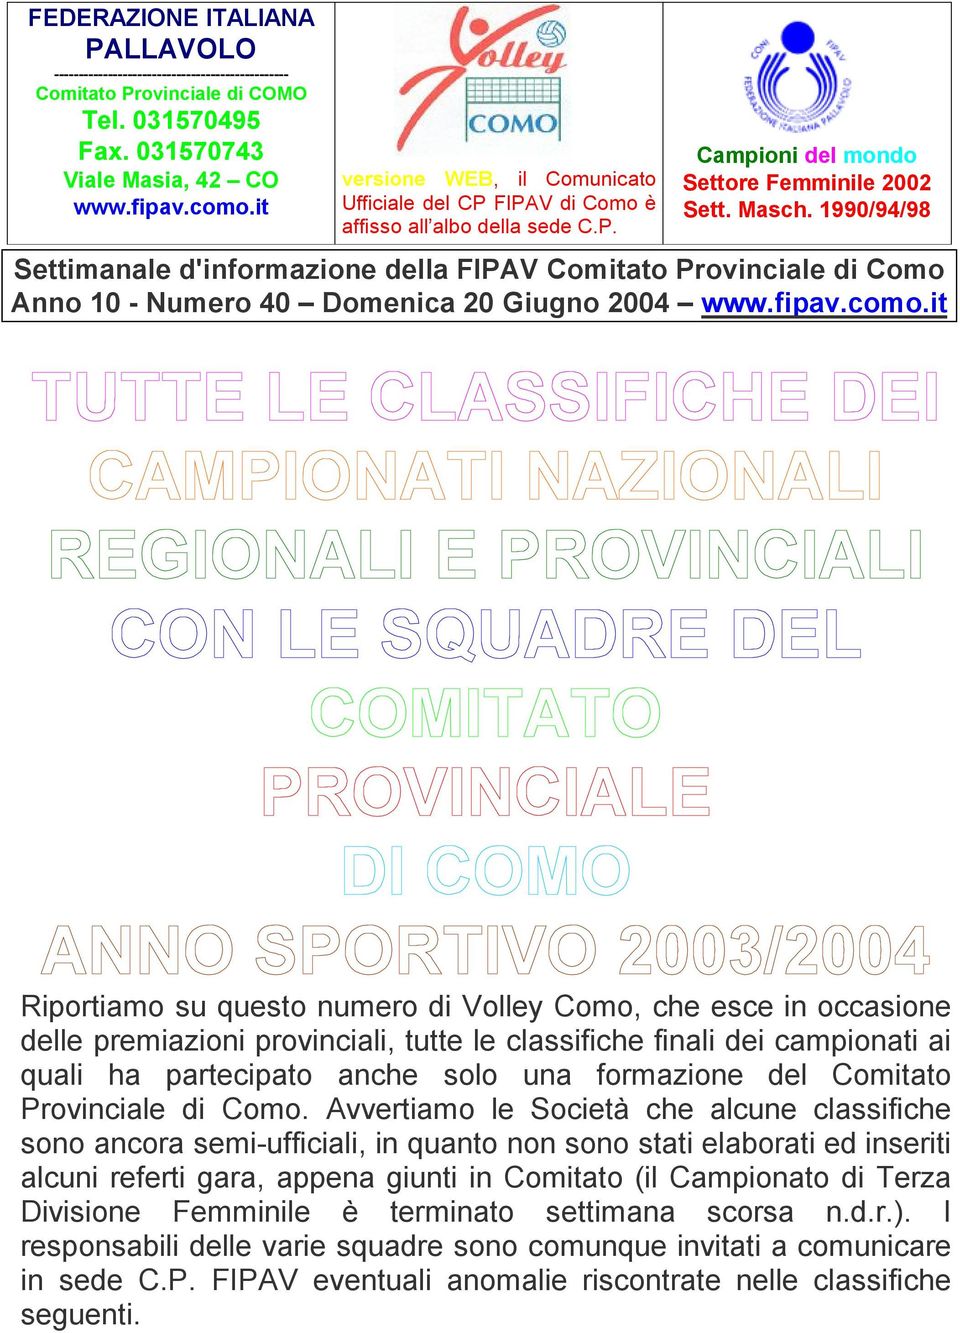 1990/94/98 Settimanale d'informazione della FIPAV Comitato Provinciale di Como Anno 10 - Numero 40 Domenica 20 Giugno 2004 www.fipav.como.